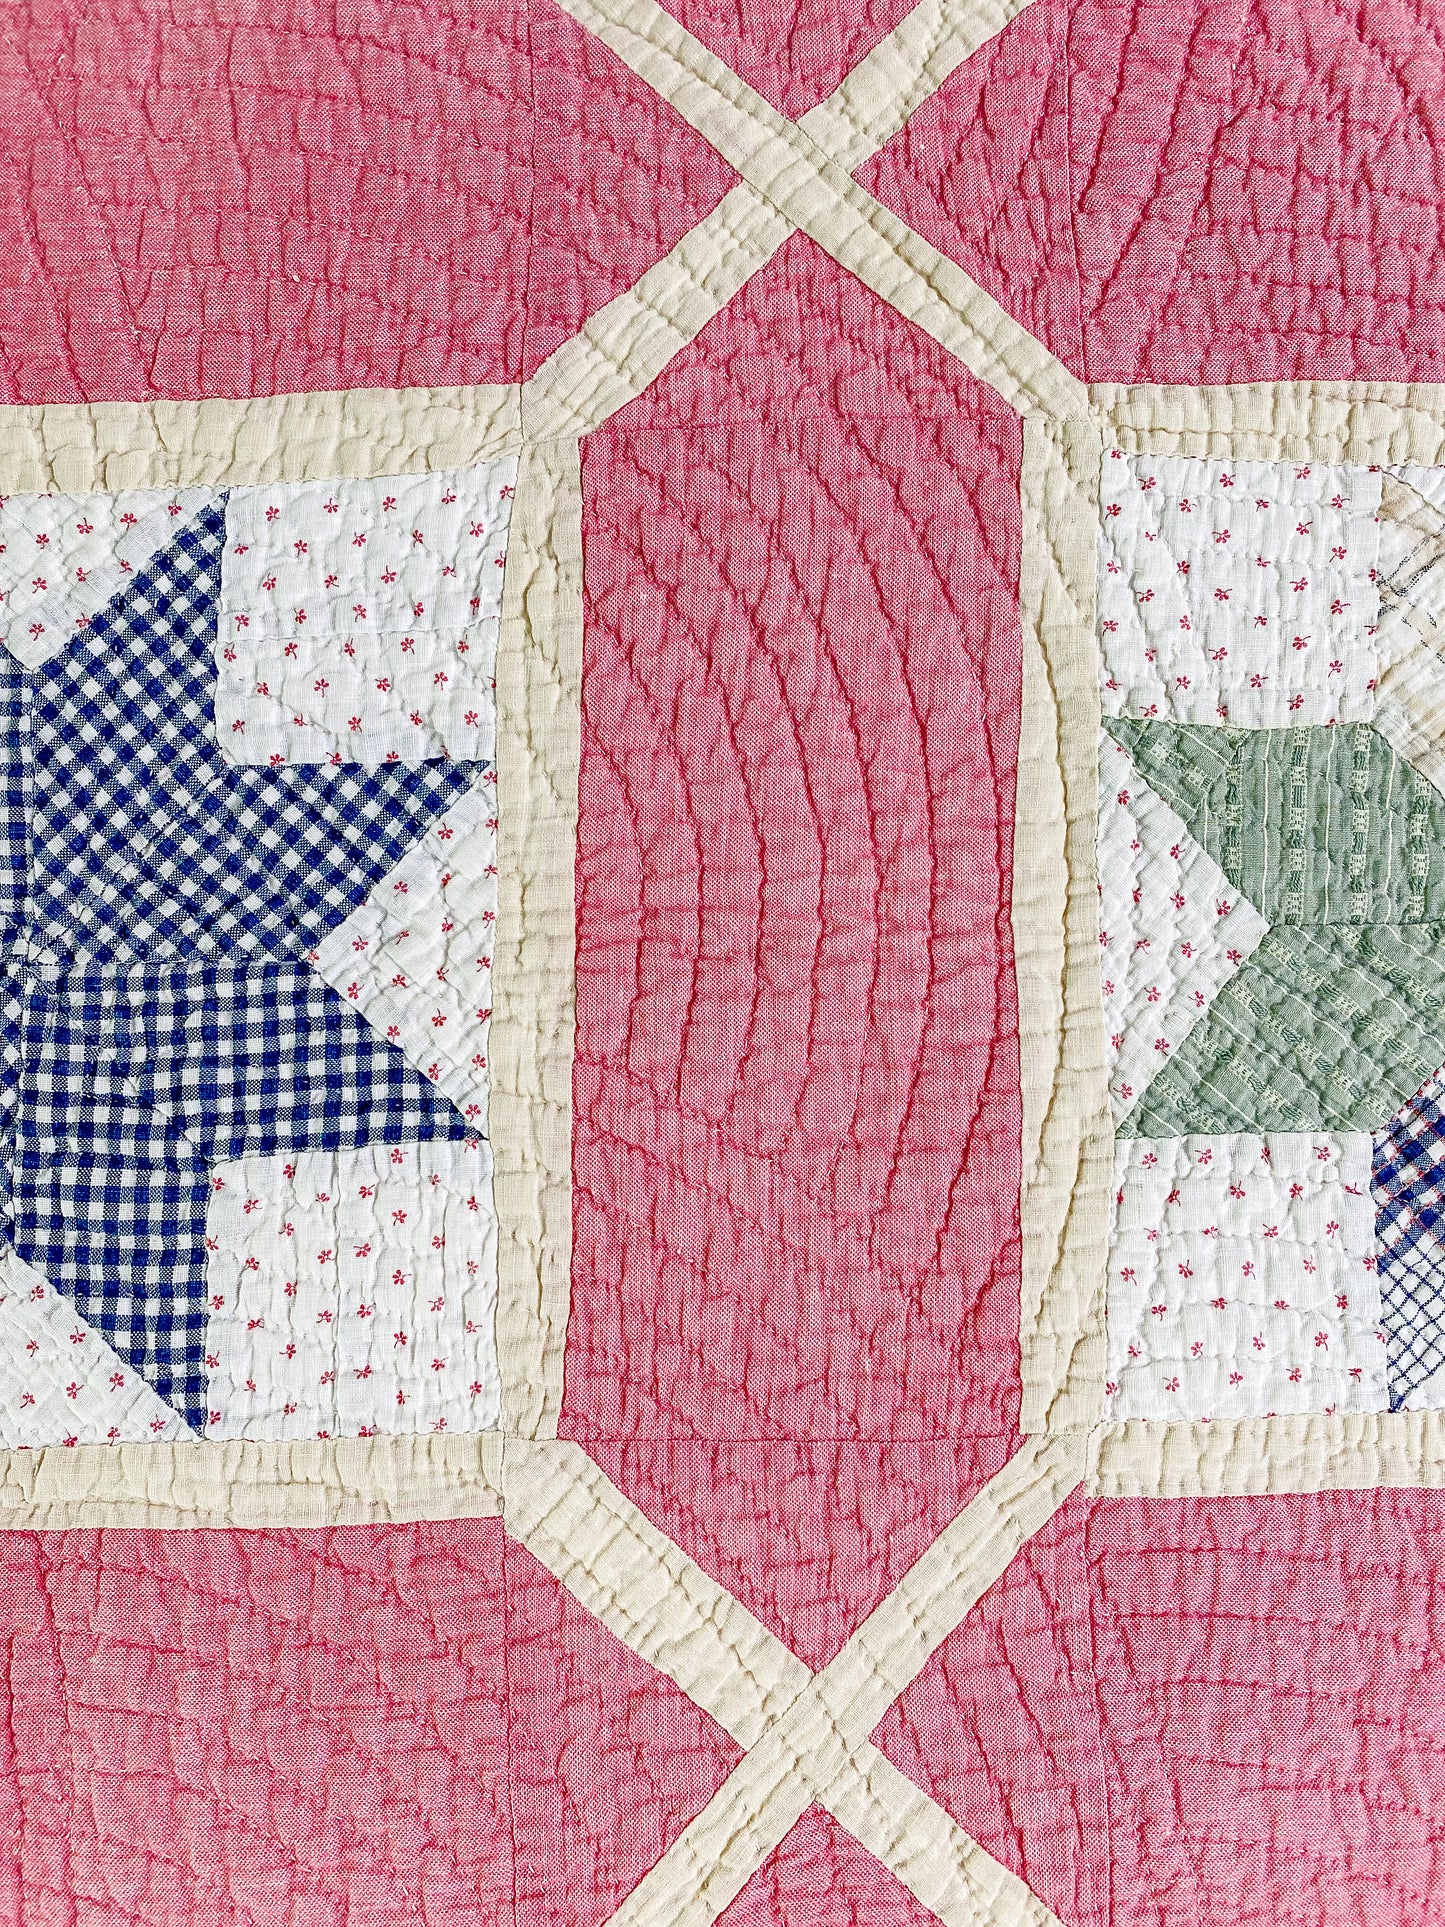 Antique 8 Point Stars in Garden Maze Quilt, c1910